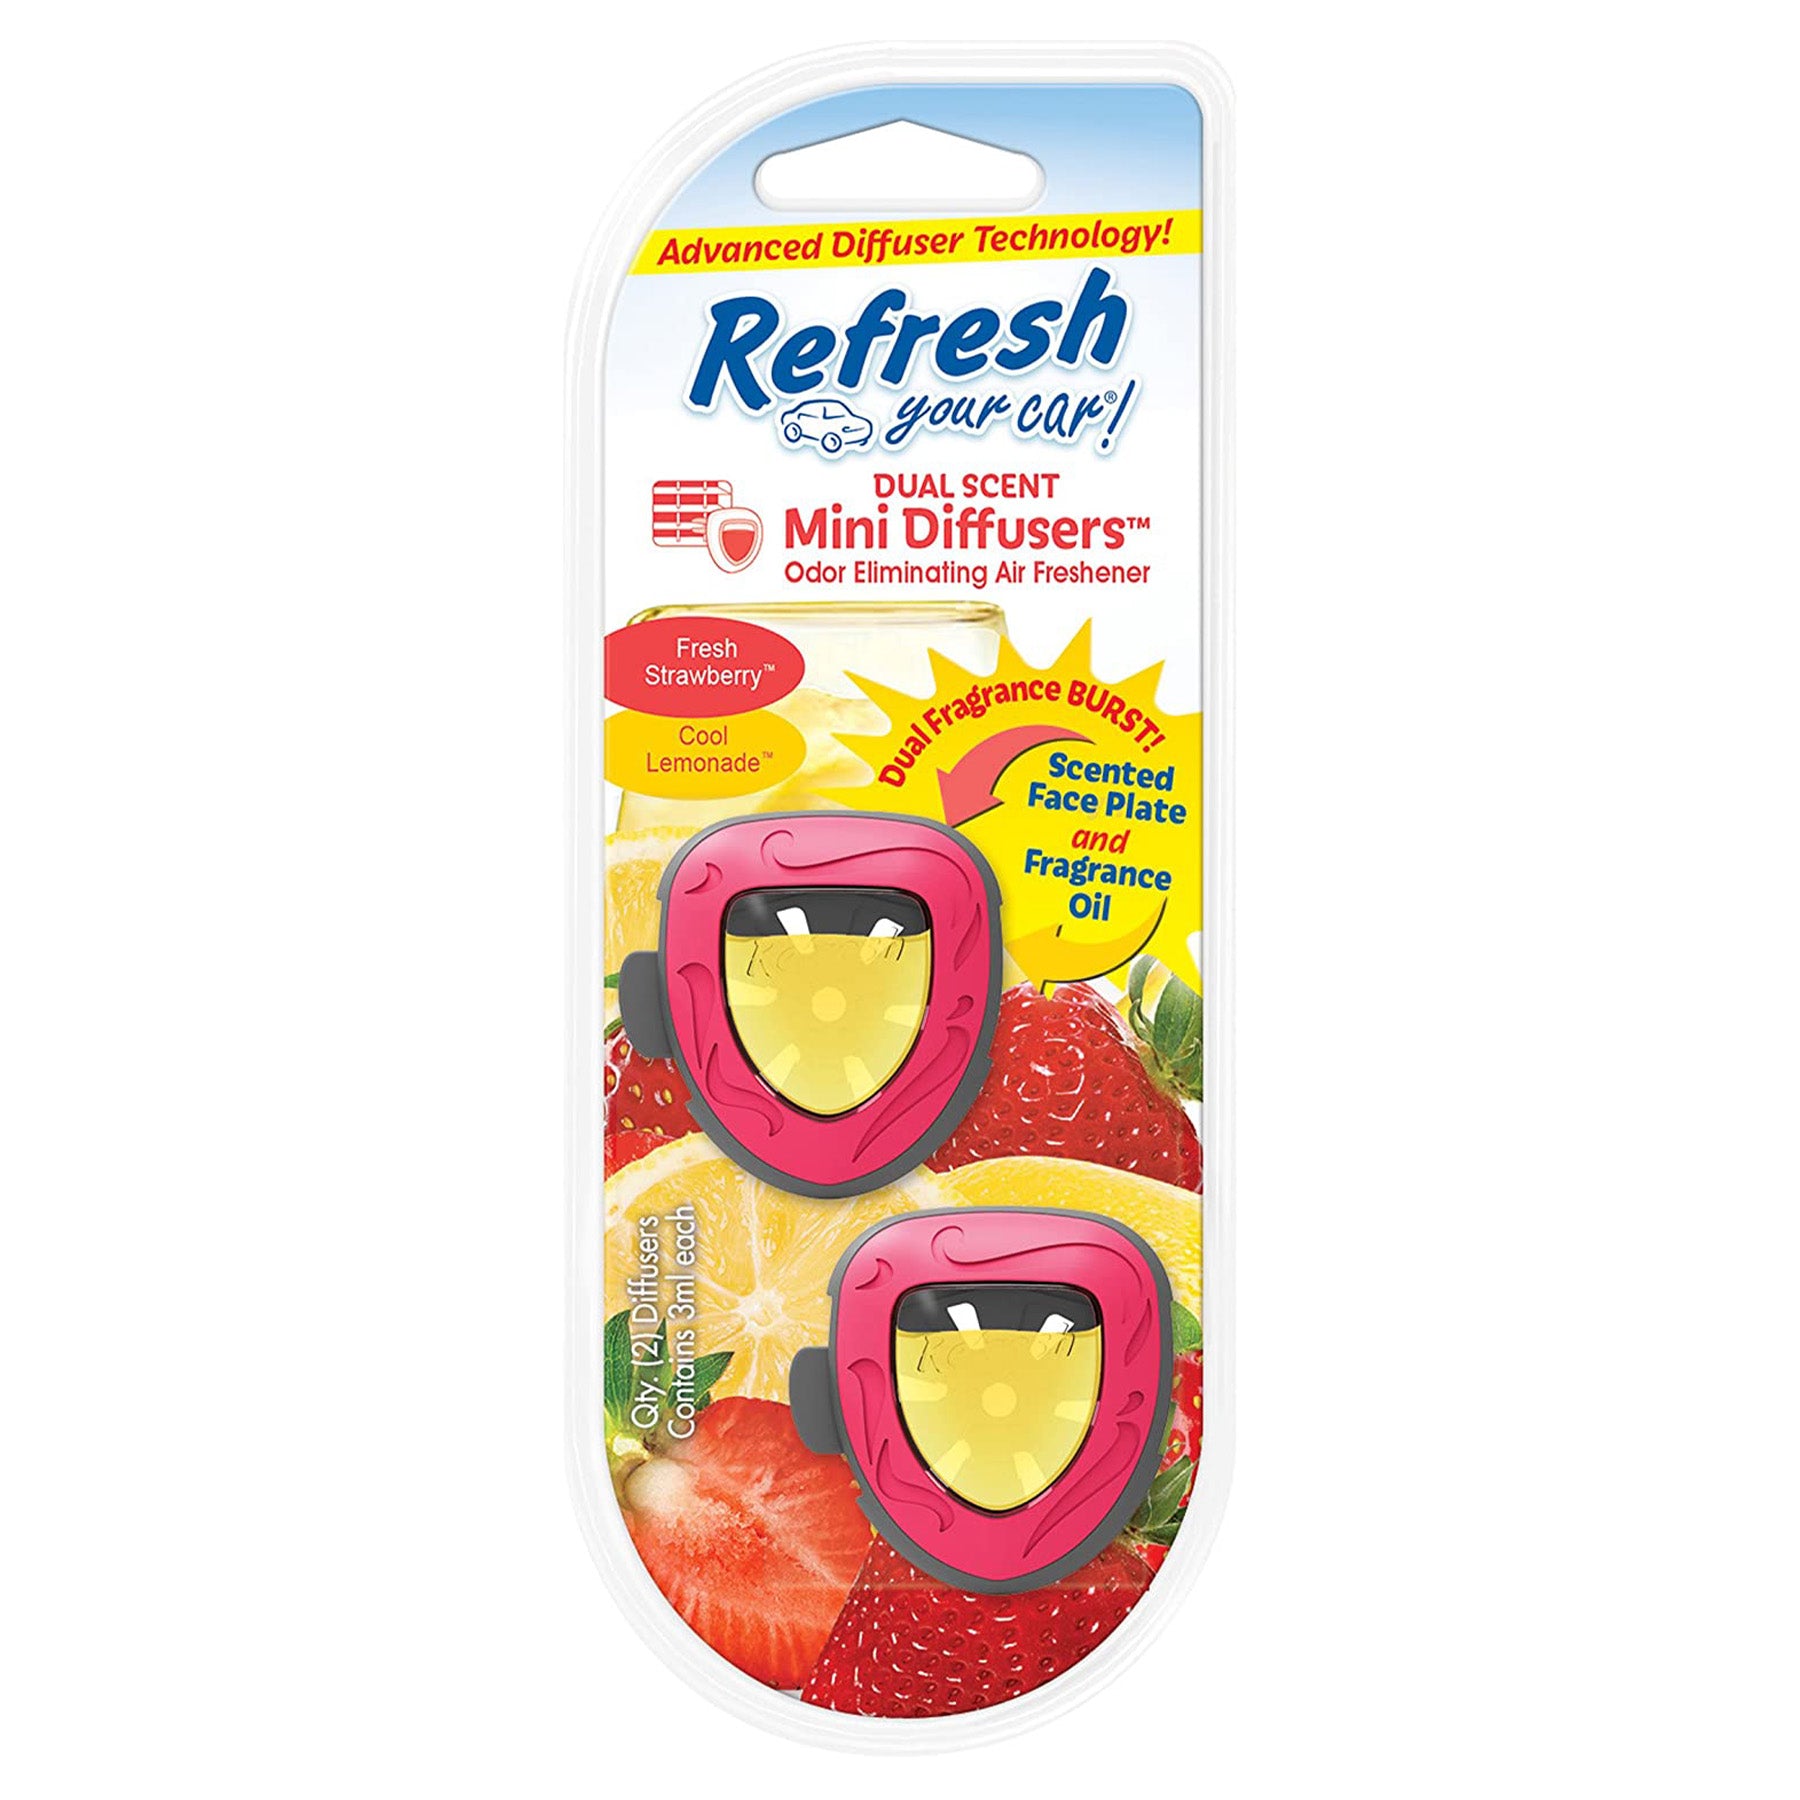 Mini Diffusers - Fresh strawberry & Cool lemonade scent Size: 3 ml